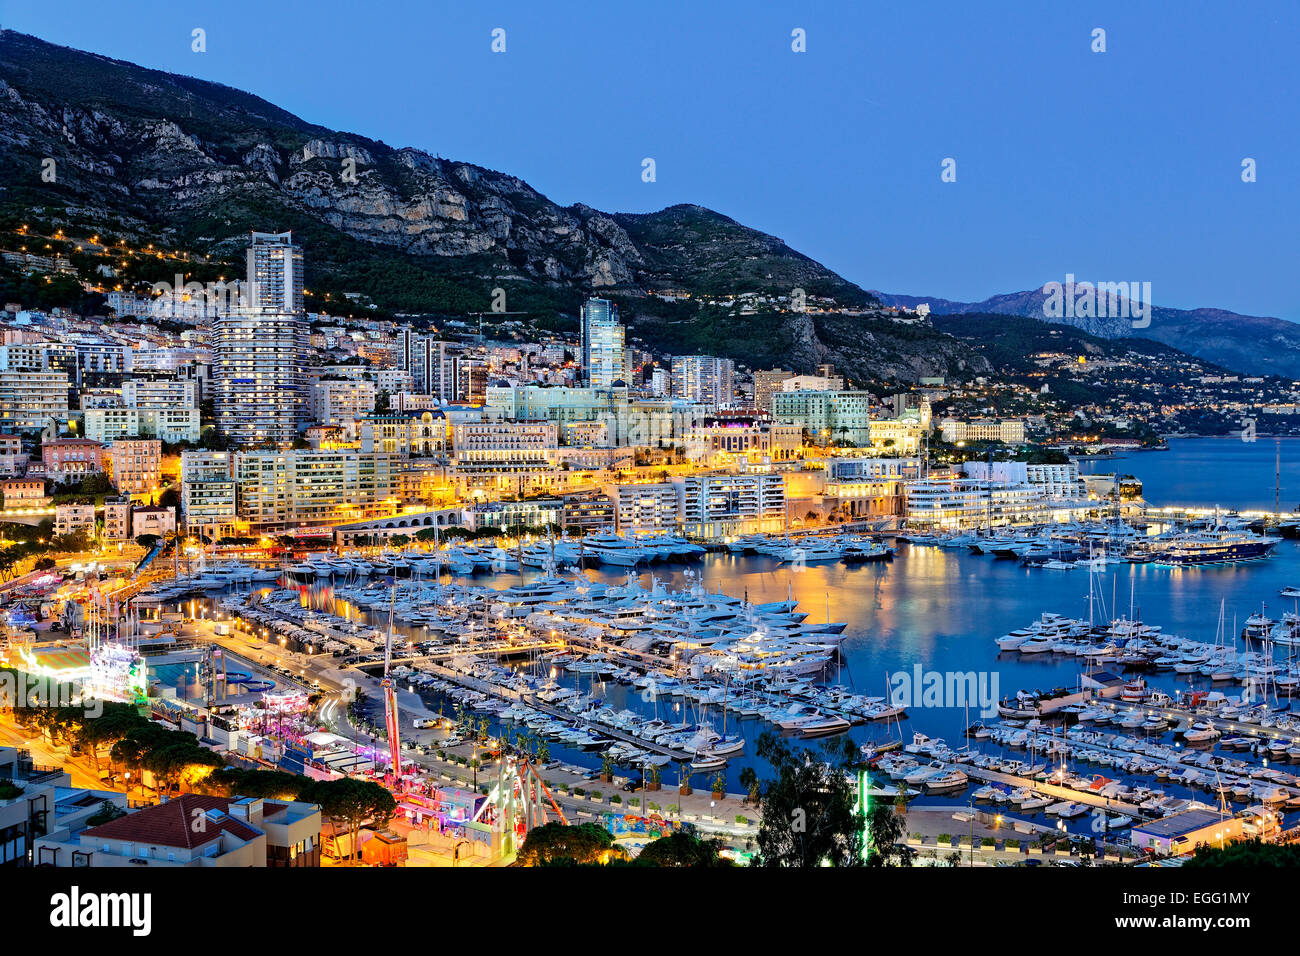 Monaco harbour Stock Photo